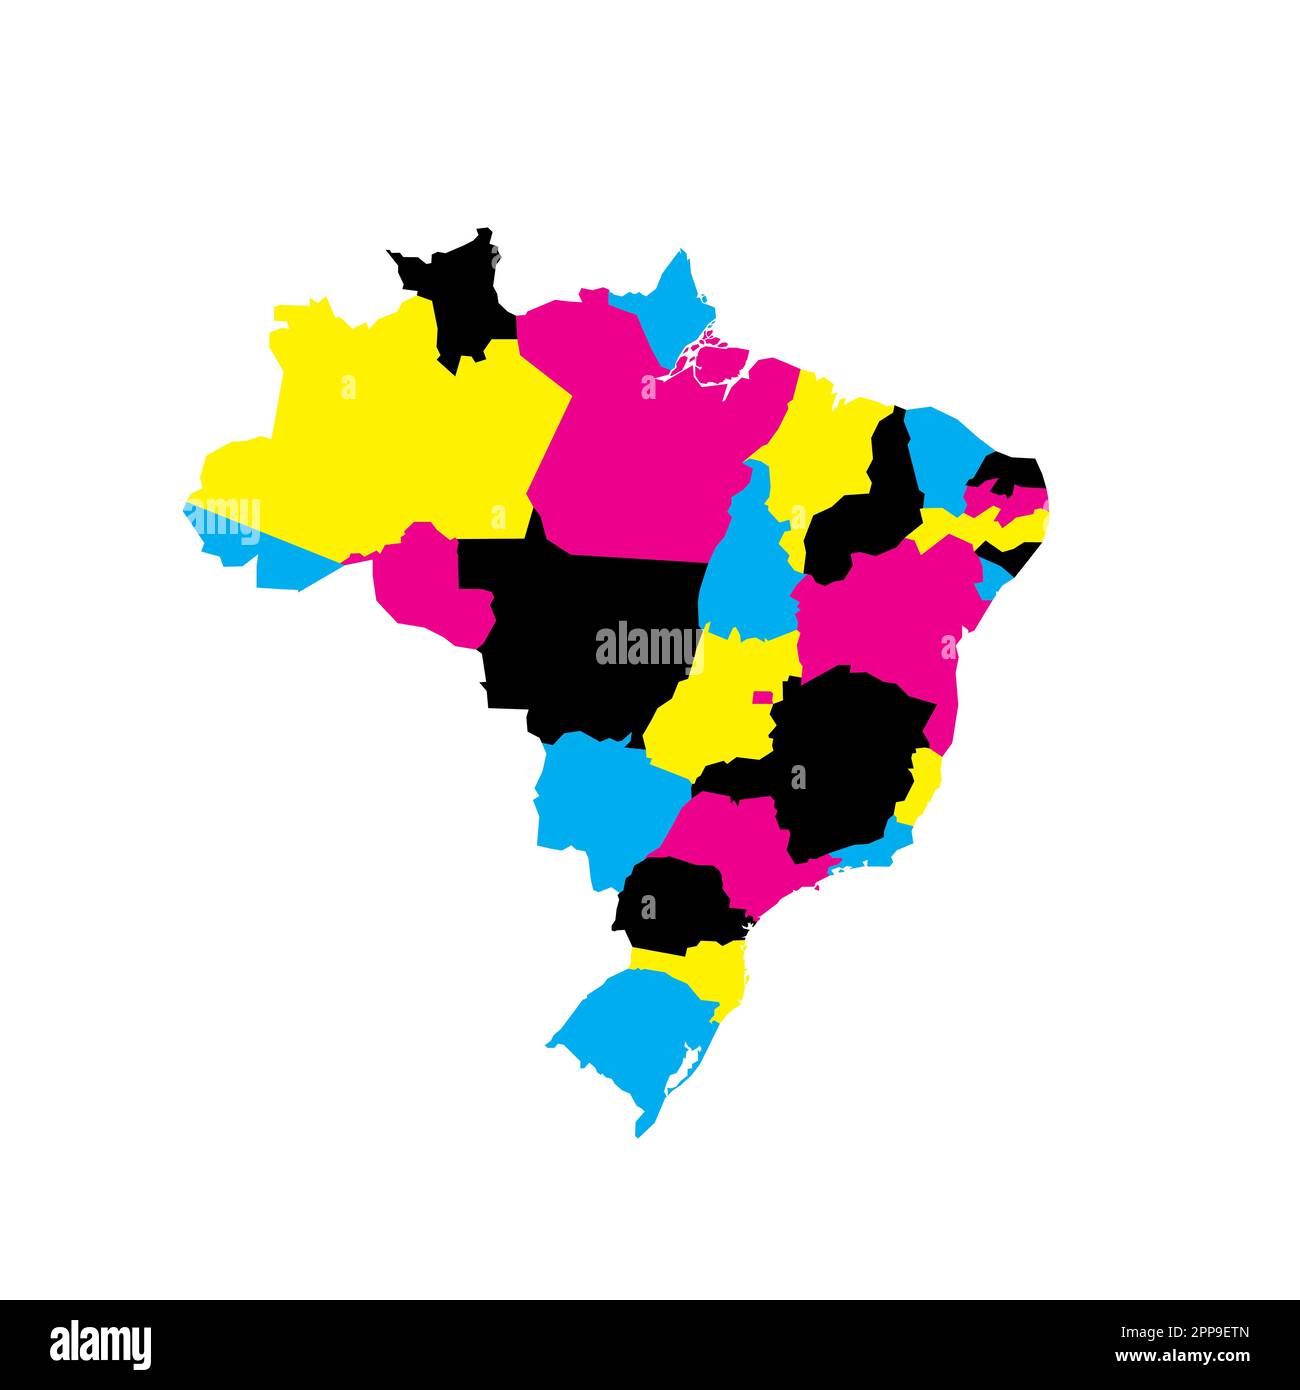 Politische Karte Brasiliens der Verwaltungsabteilungen - Föderative Einheiten Brasiliens. Leere Vektorzuordnung in CMYK-Farben. Stock Vektor